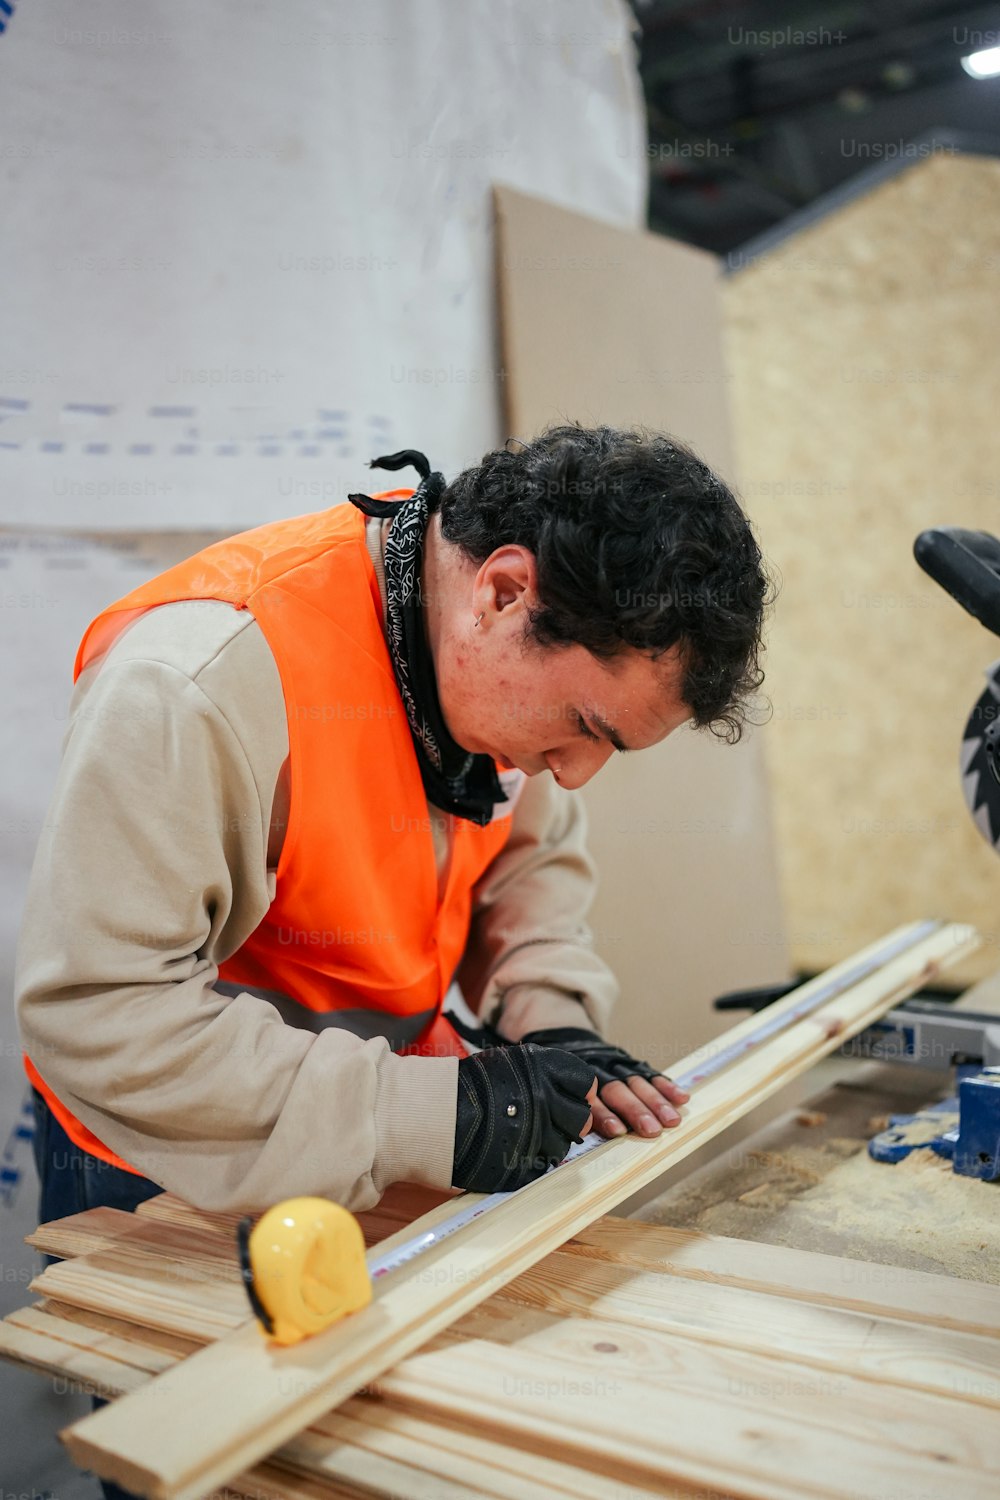 주황색 조끼를 입은 남자가 나무 조각을 작업하고 있다